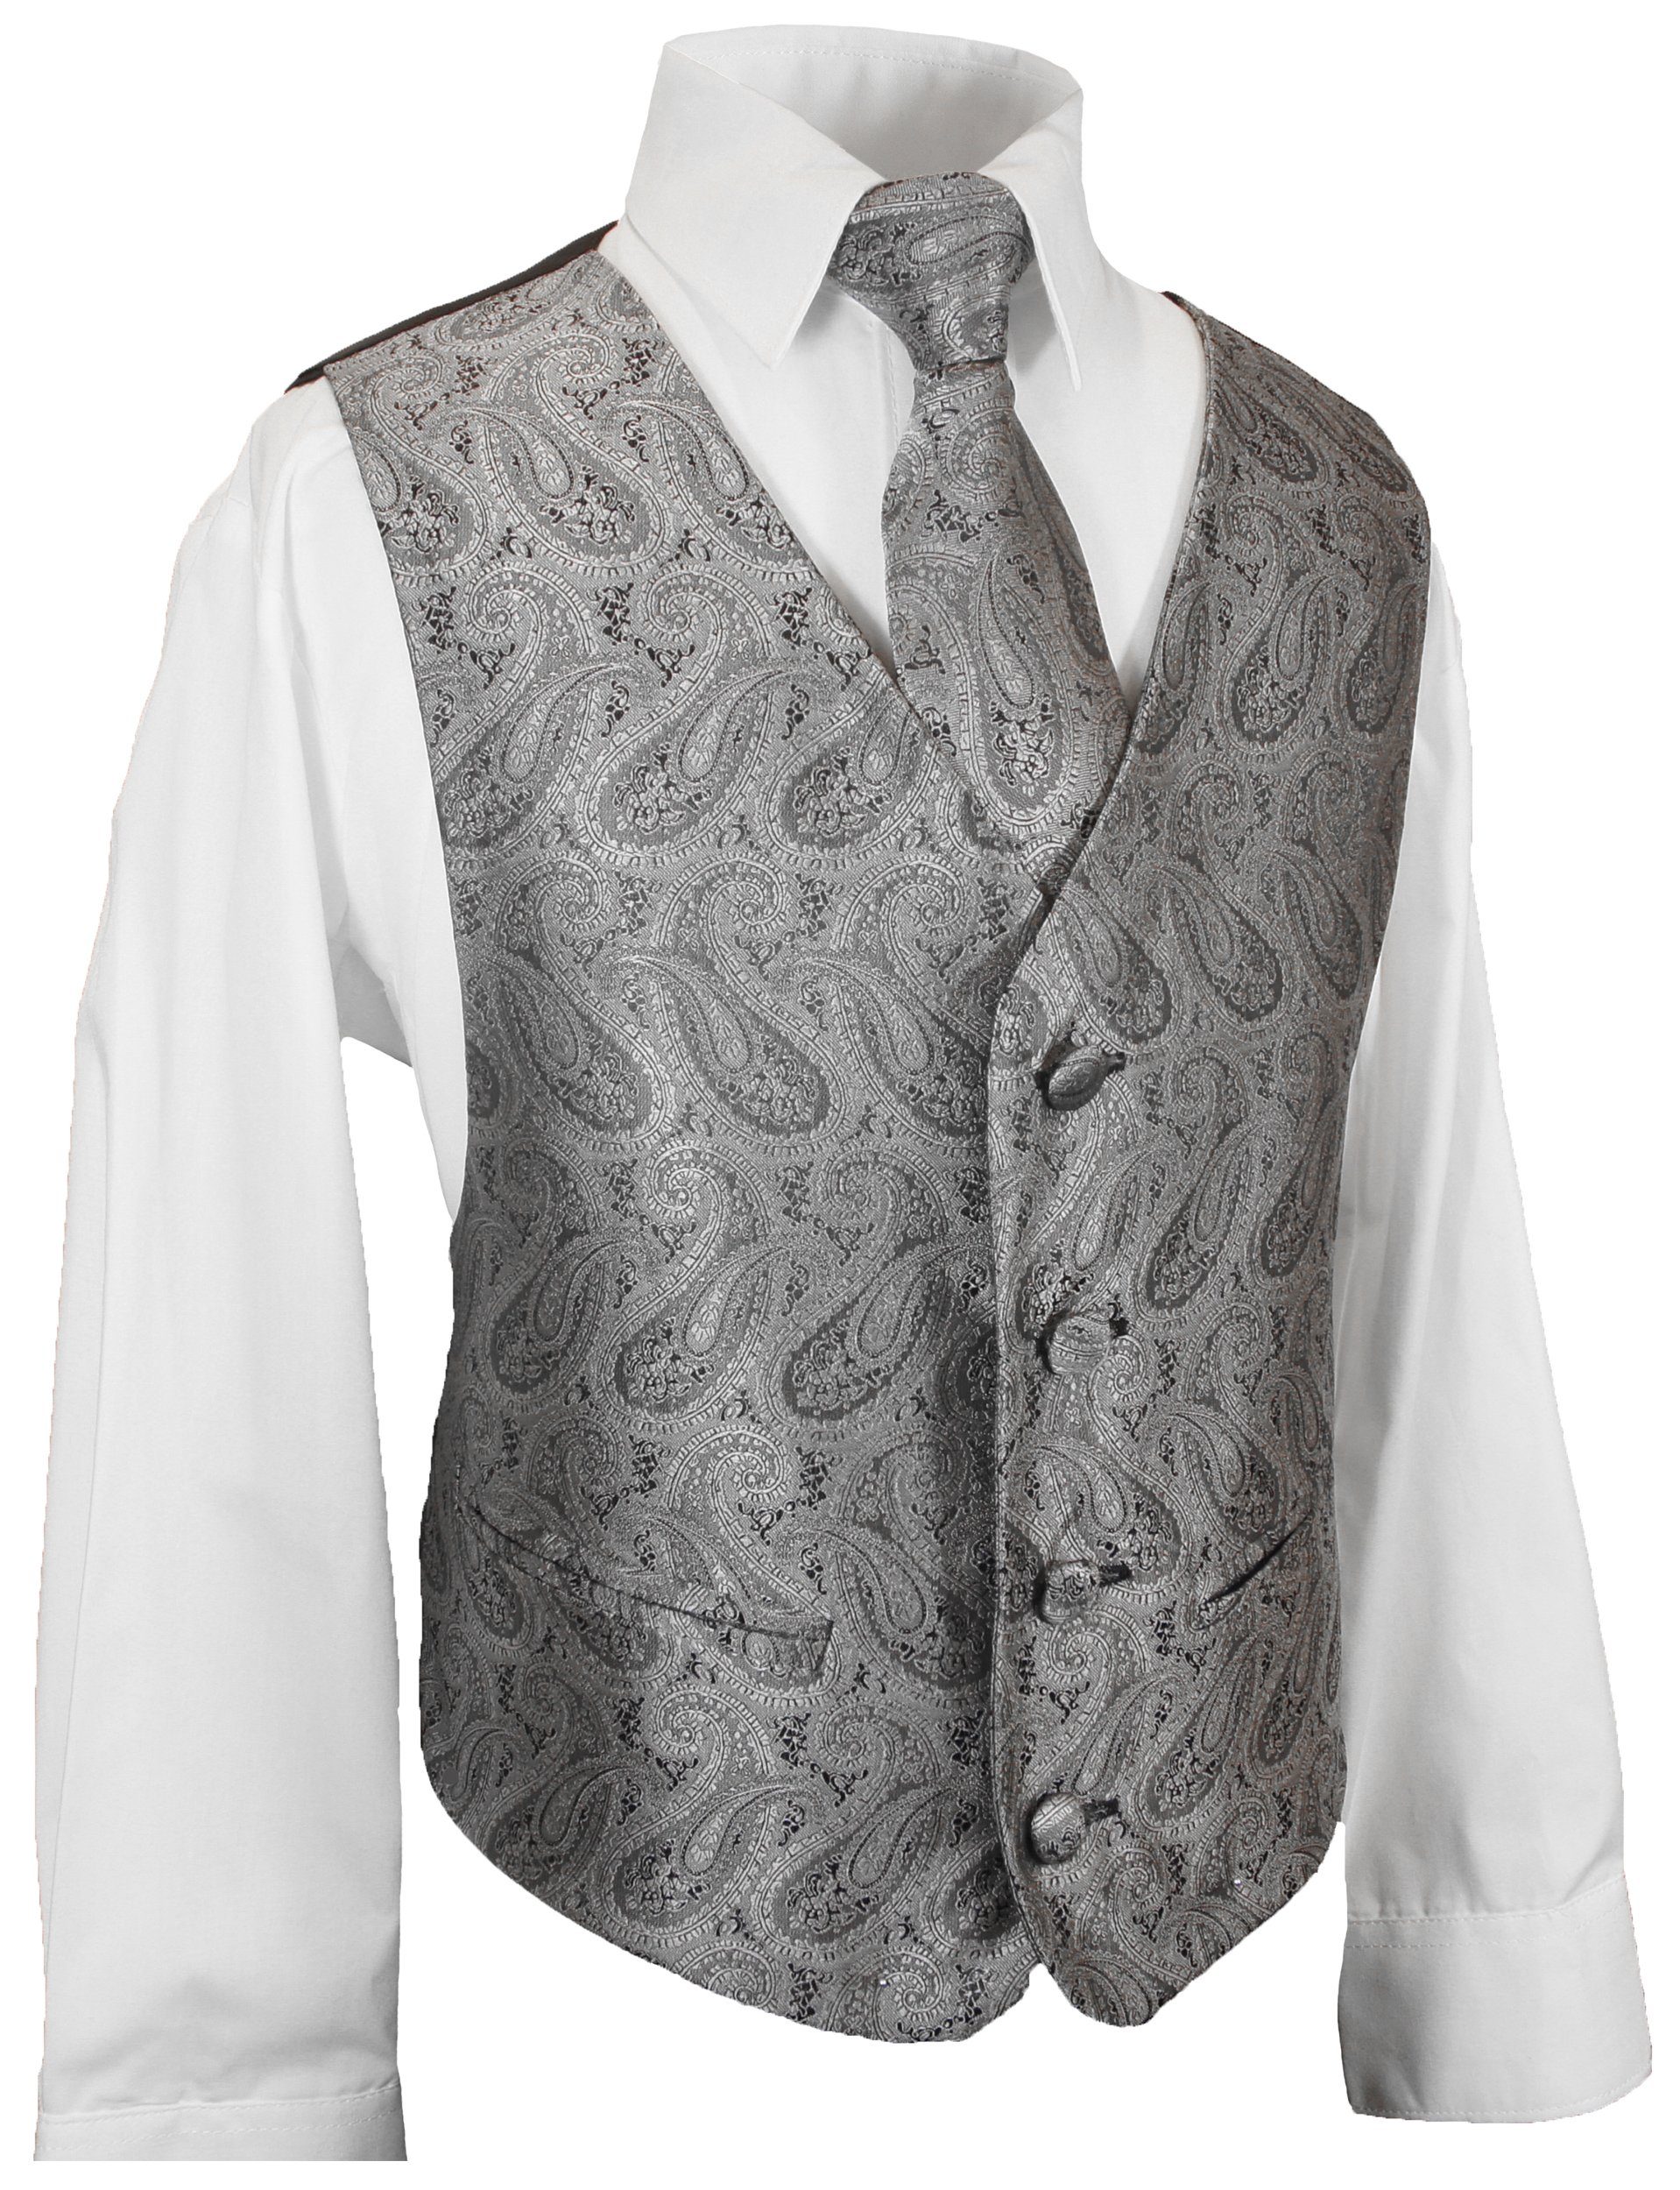 Paul Malone Anzugweste Festliche Hemd 3-tlg., Weste mit Kinderweste Krawatte) (Set, Anzug KV30-Krawatte Jungenweste silber Kinder und Weste, grau